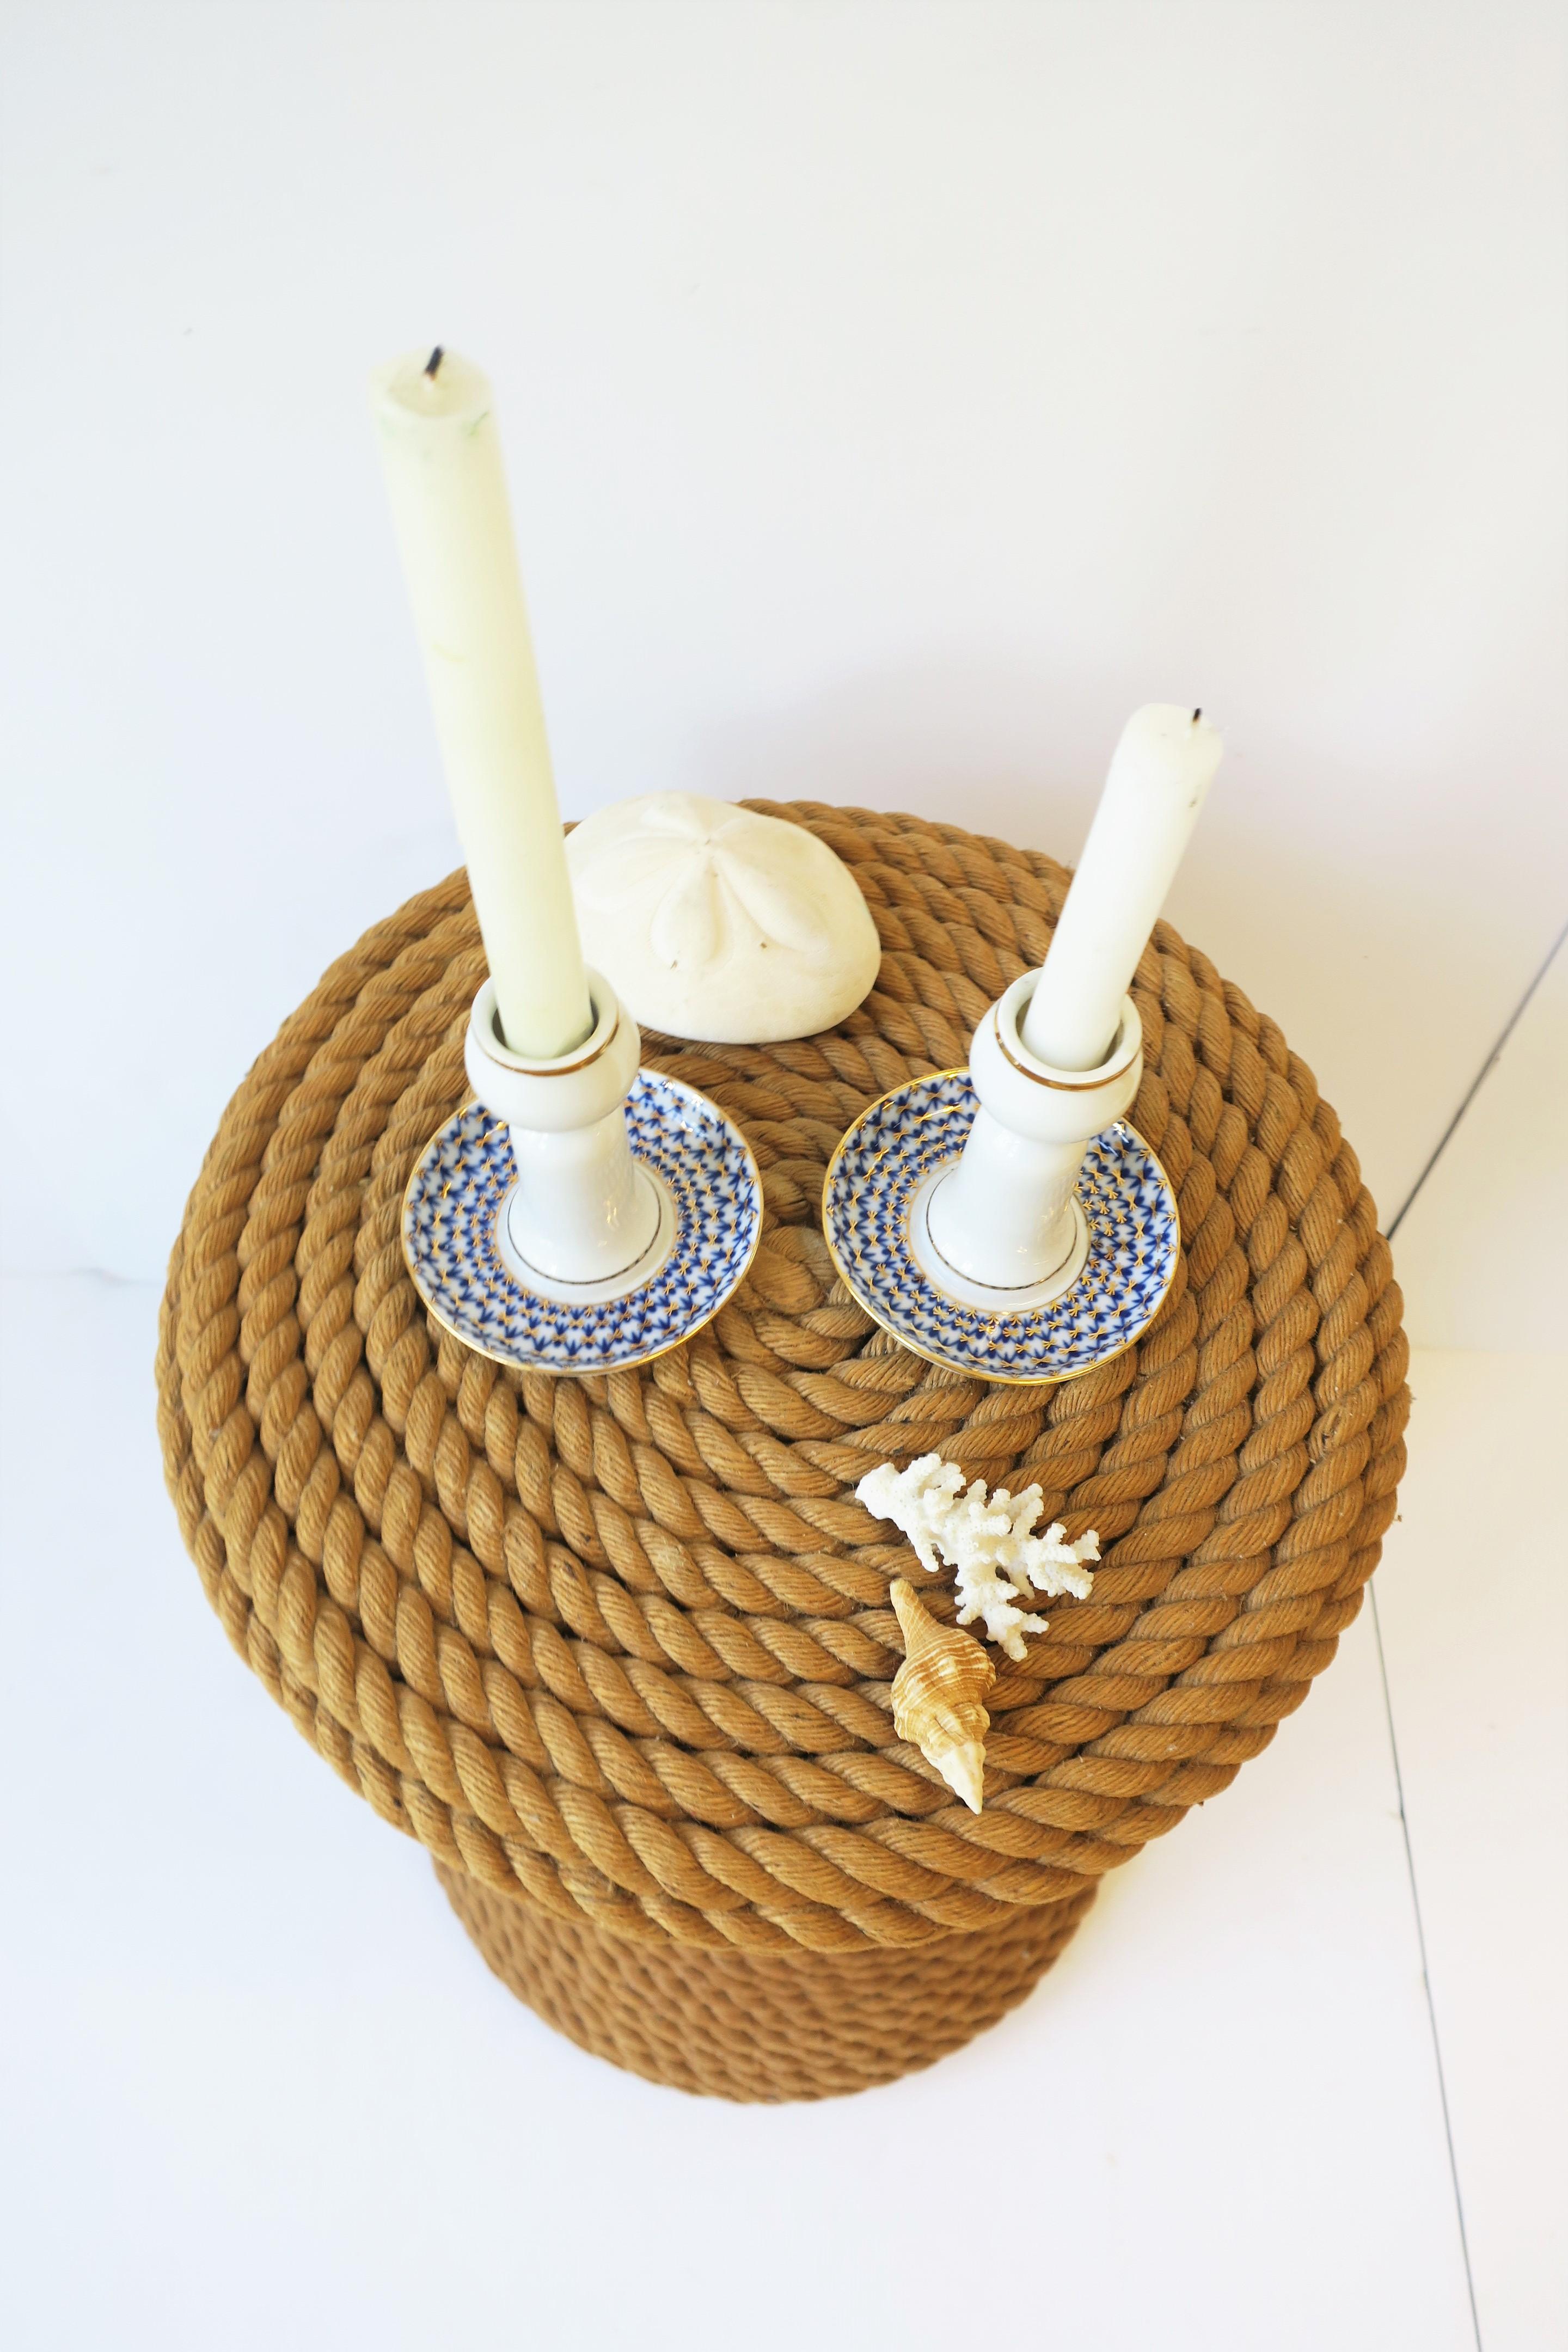 Russian Lomonosov Blue Gold White Porcelain Candlesticks Holders, Pair For Sale 7